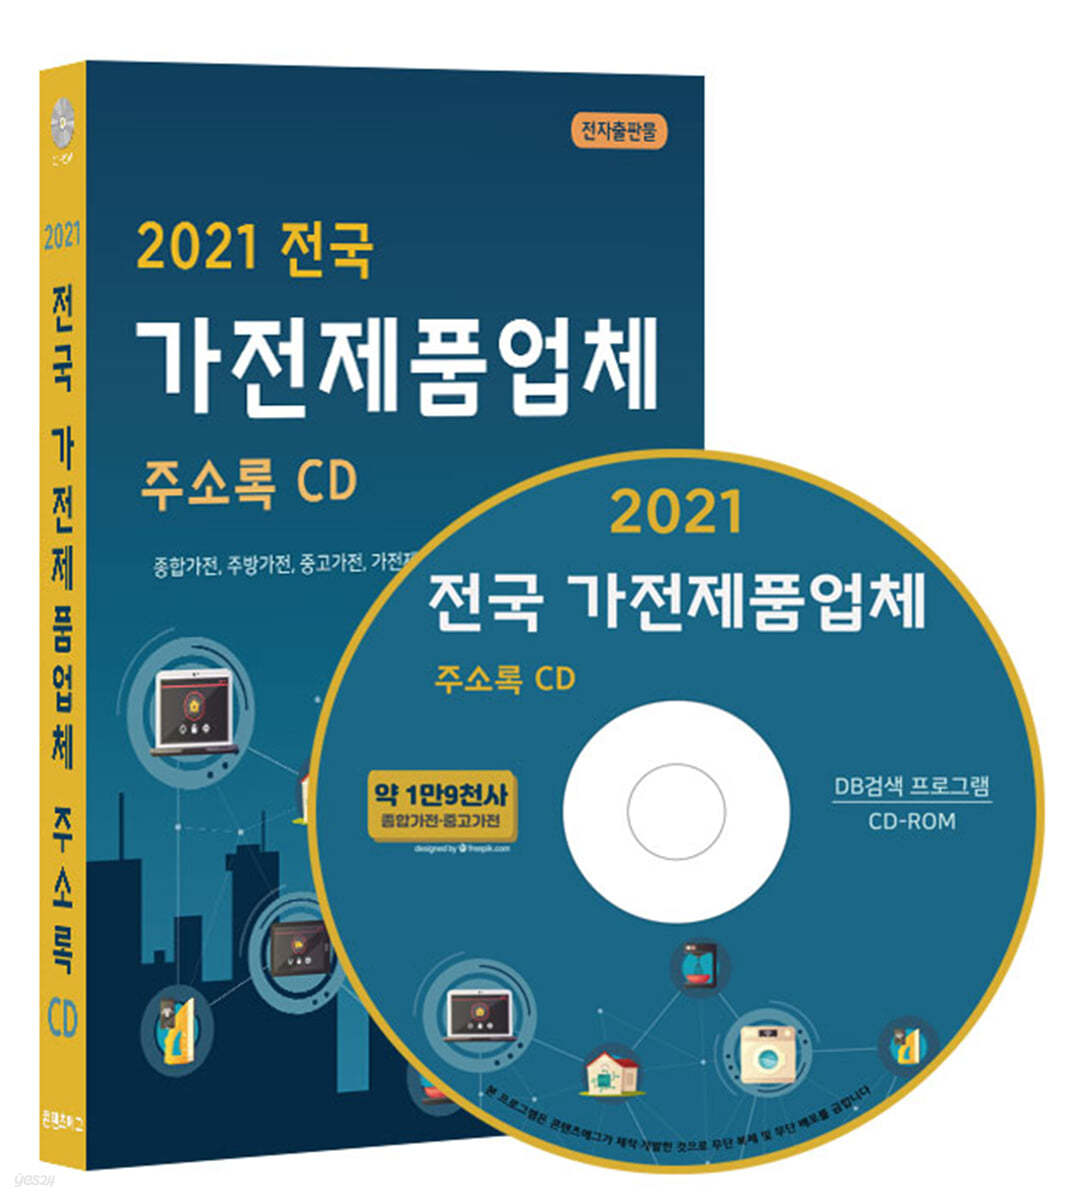 2021 전국 가전제품업체 주소록 CD